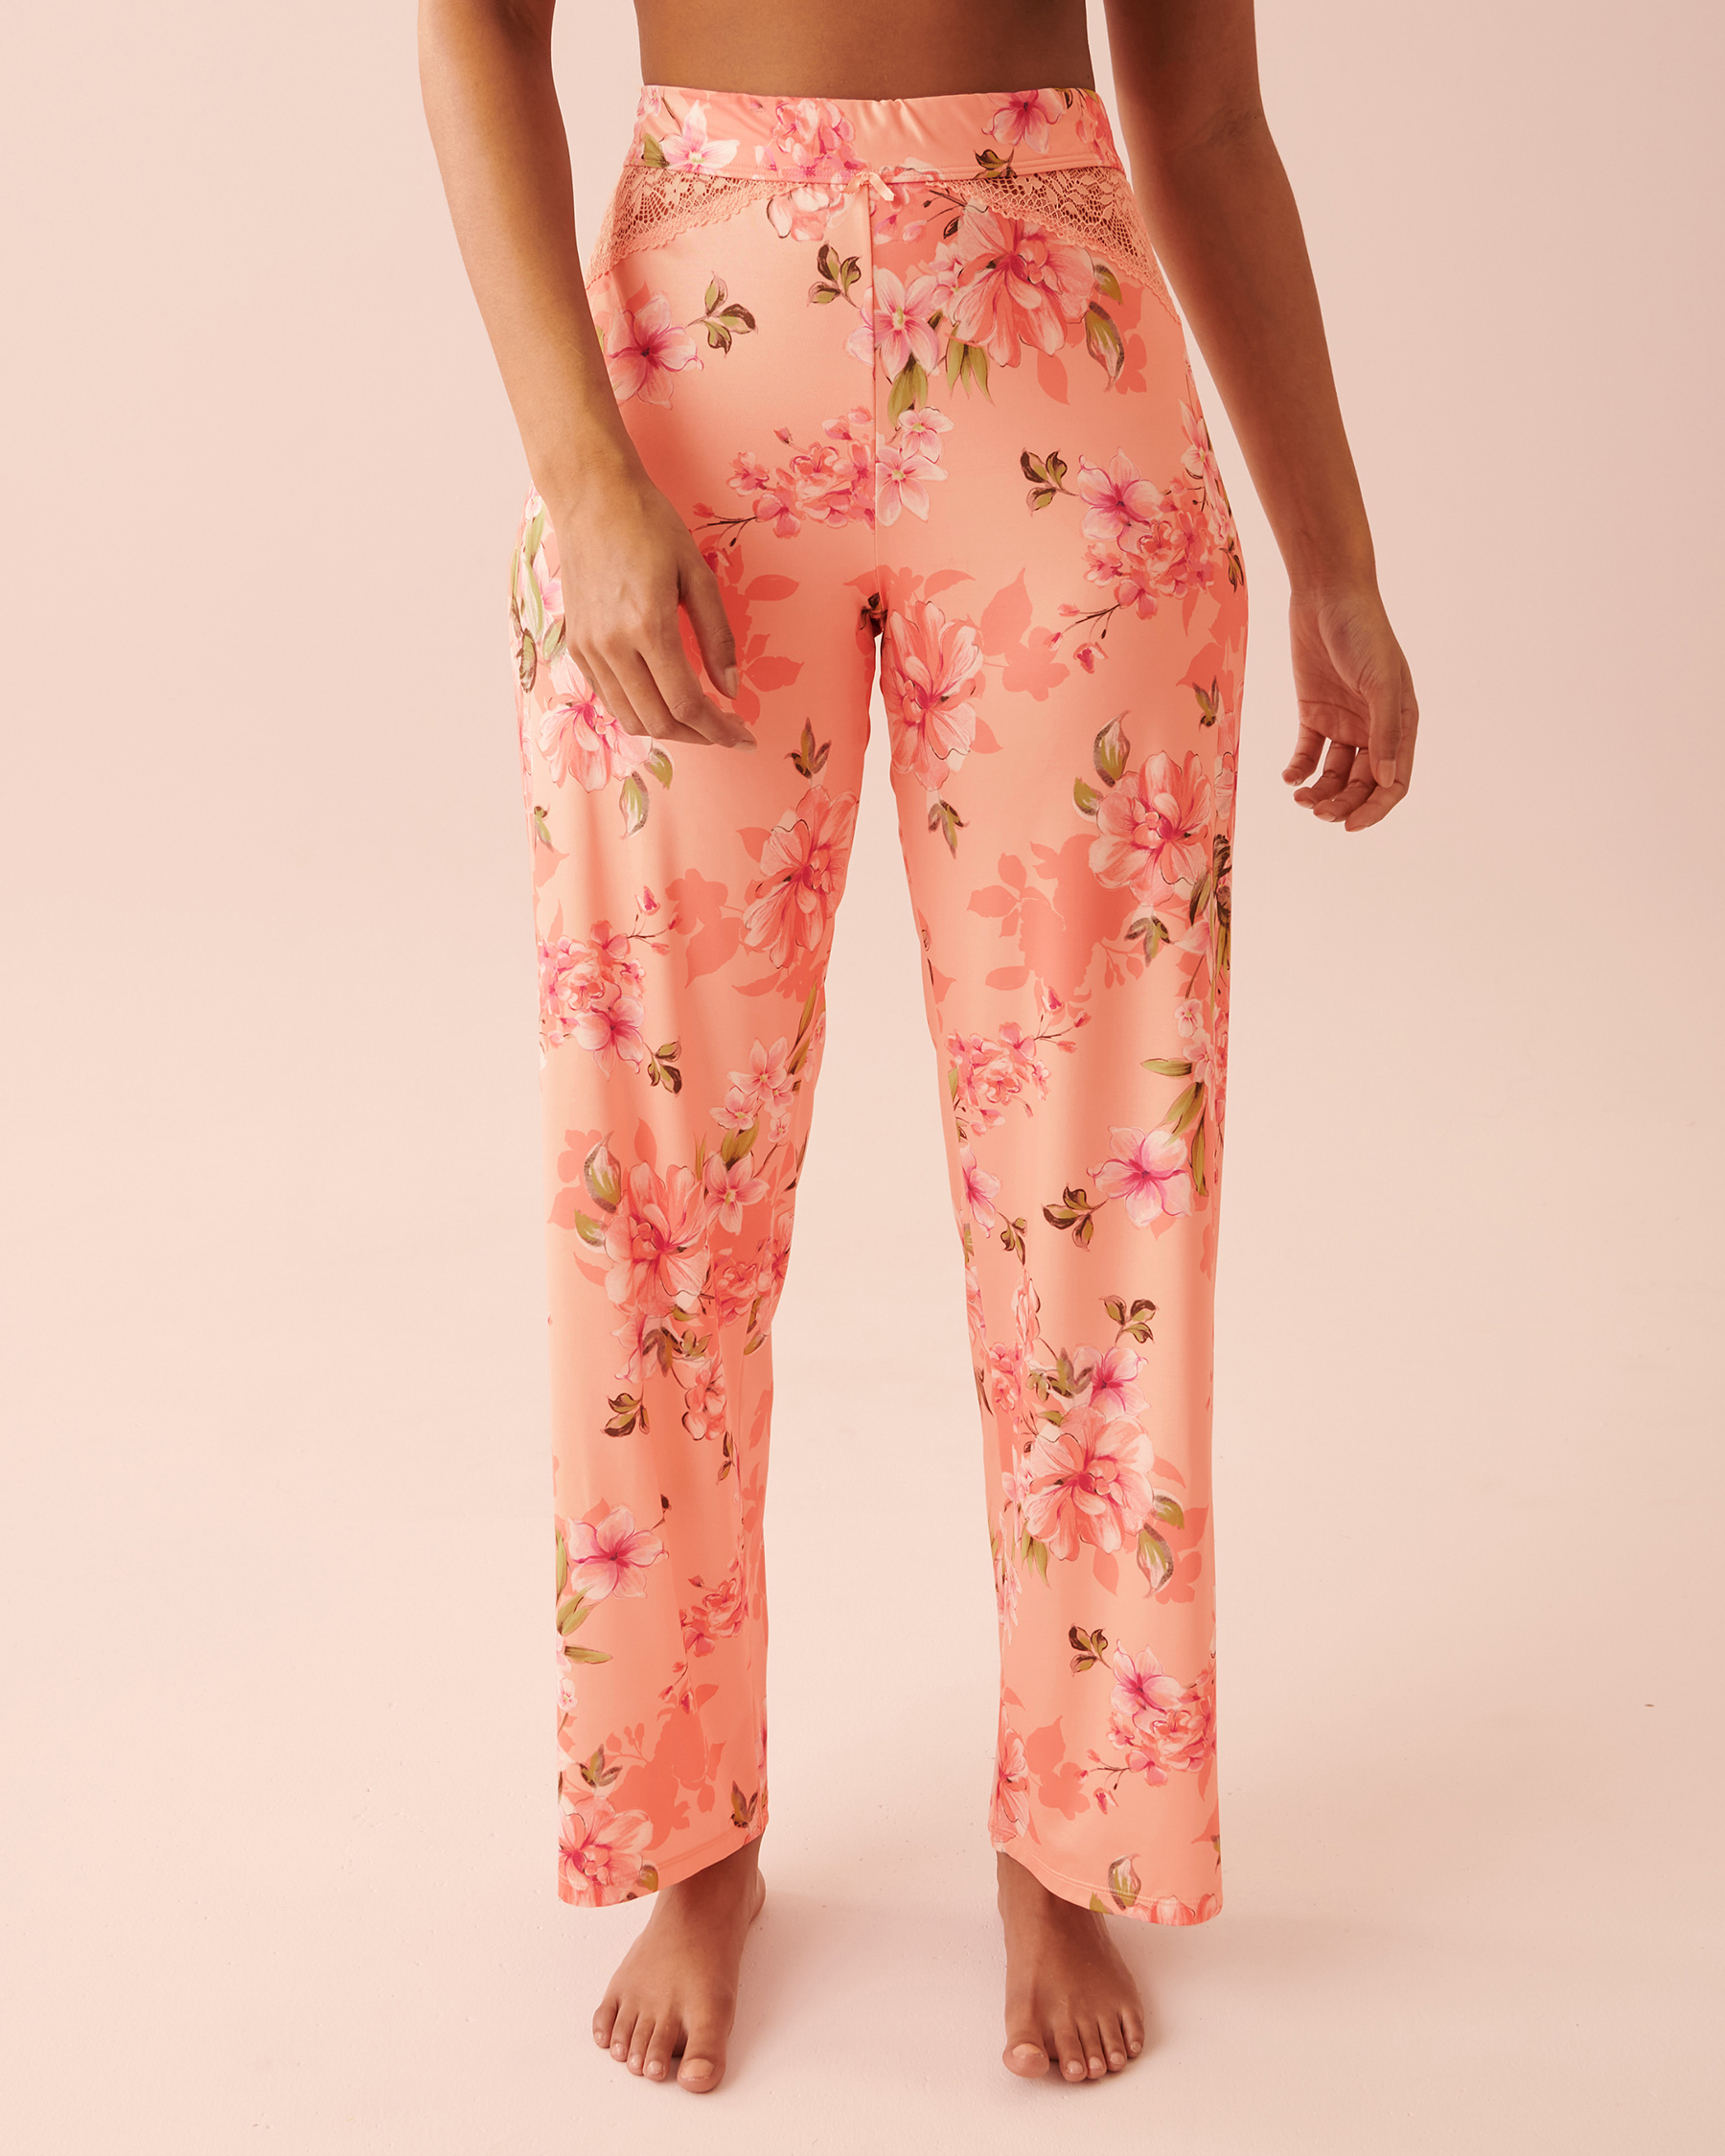 LA VIE EN ROSE Recycled Fibers Lace Trim Pants Peachy floral 60200063 - View1